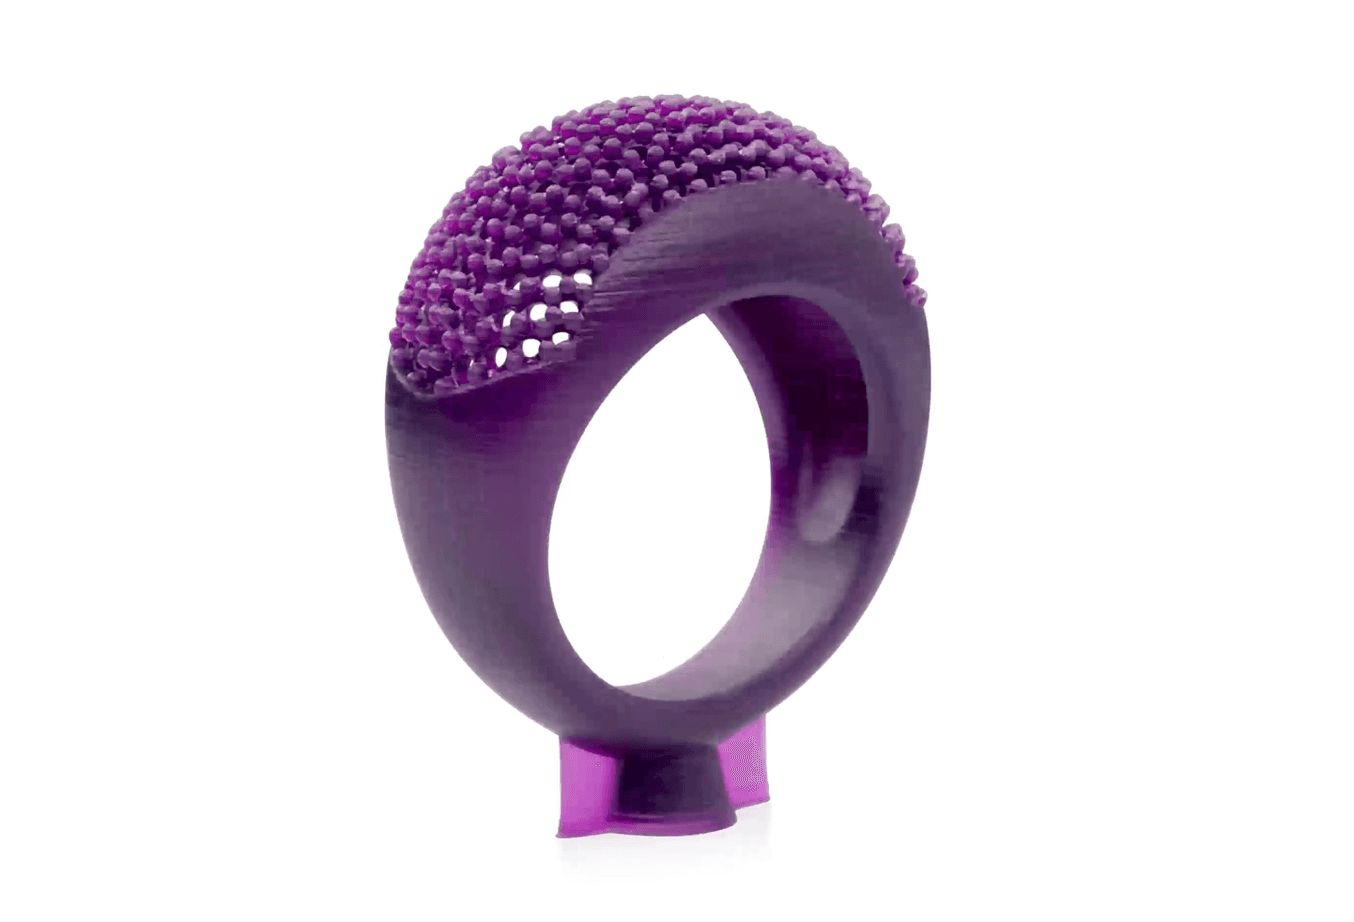 Castable Wax Schmuck 3D-gedrucktes Teil